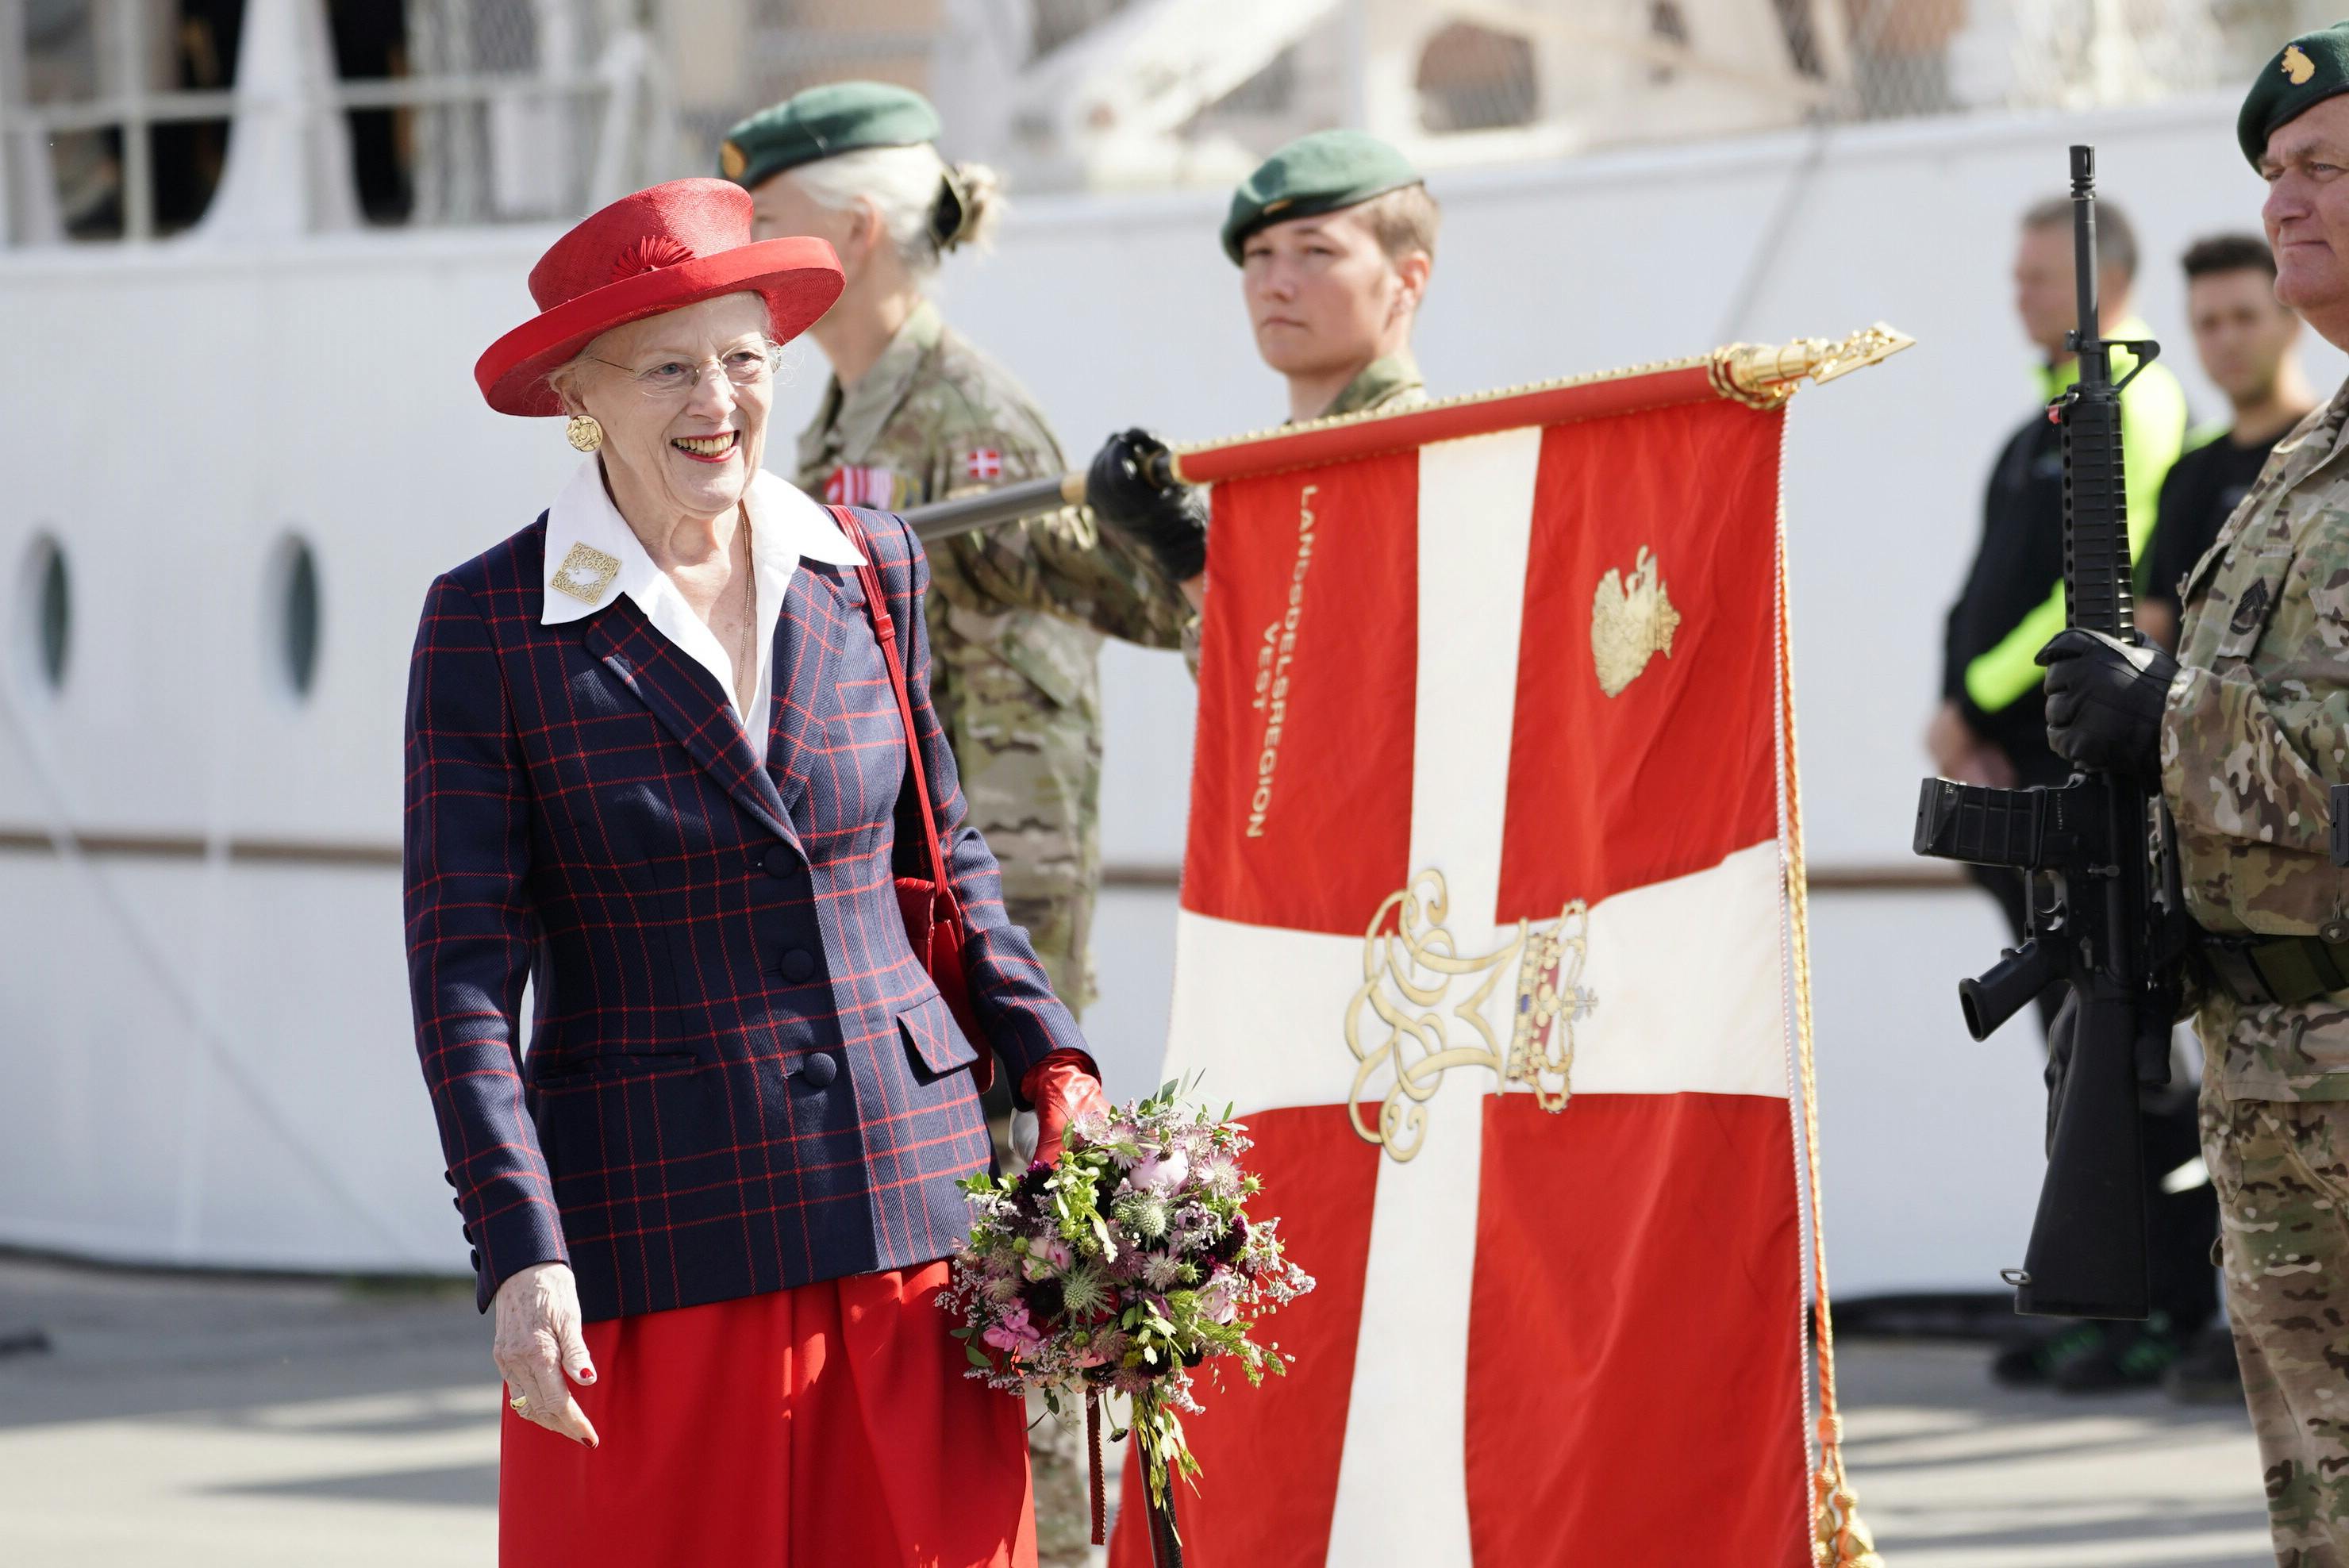 Dronning Margrethe ankommer til Aarhus
